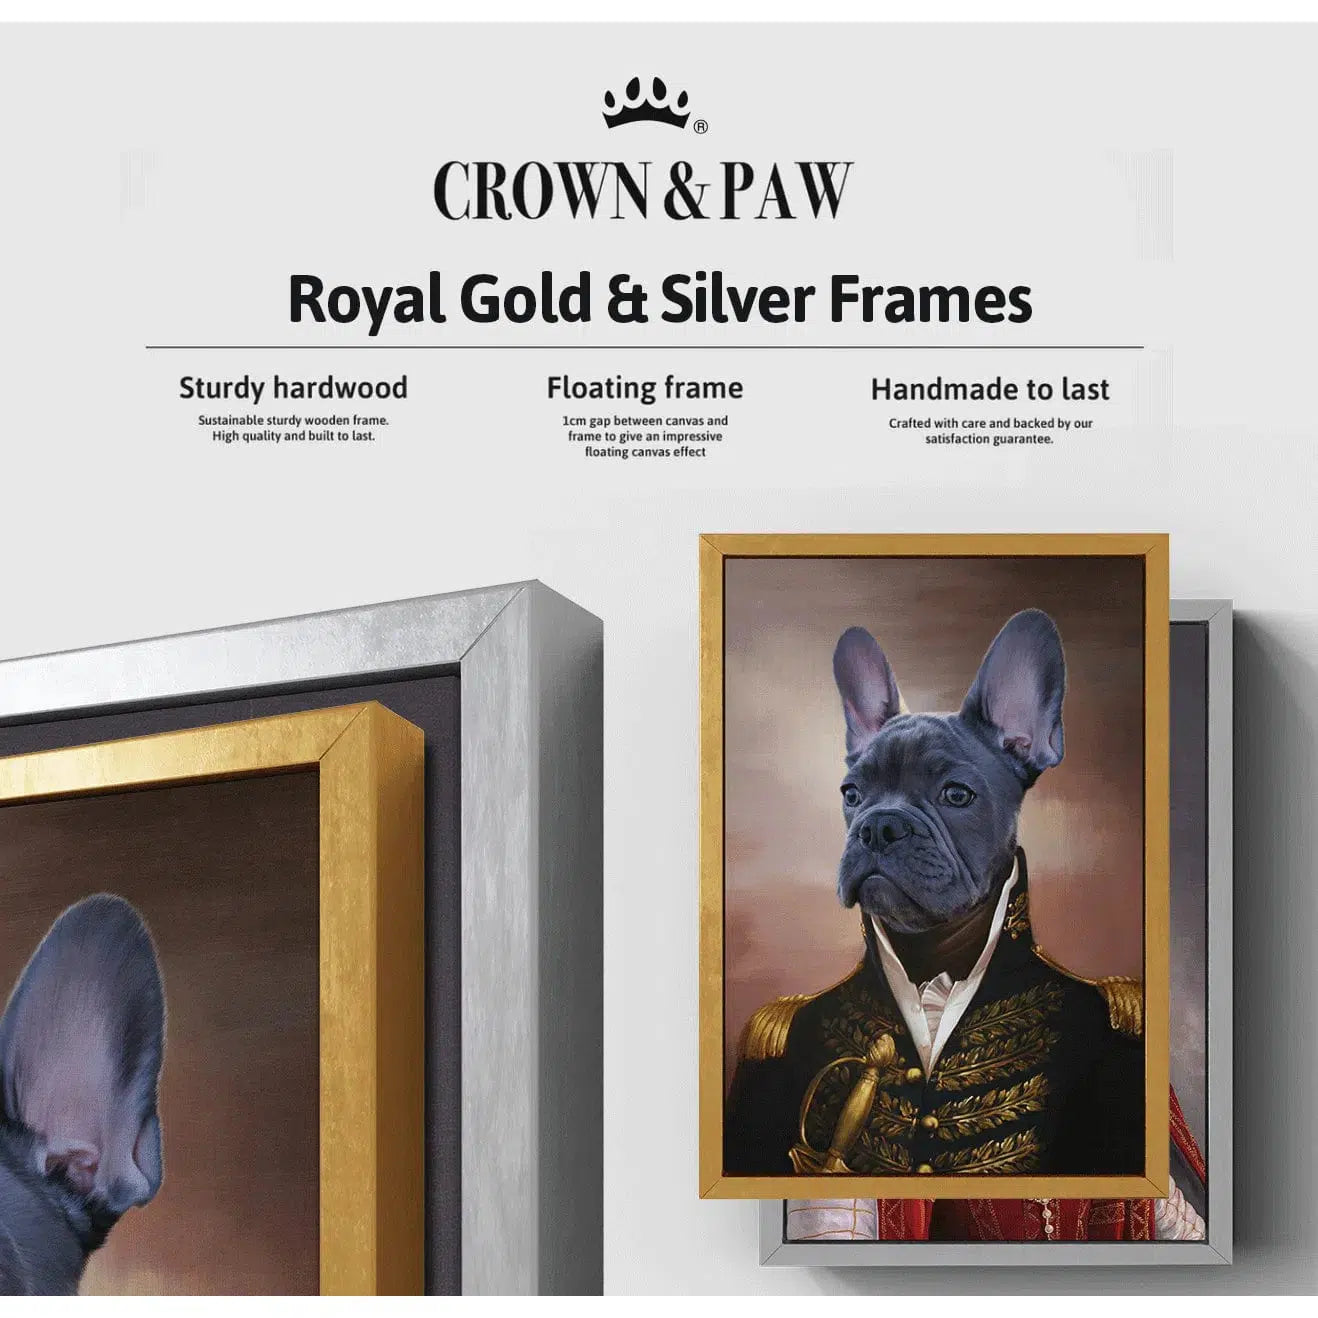 The Golden Queen - Custom Pet Canvas